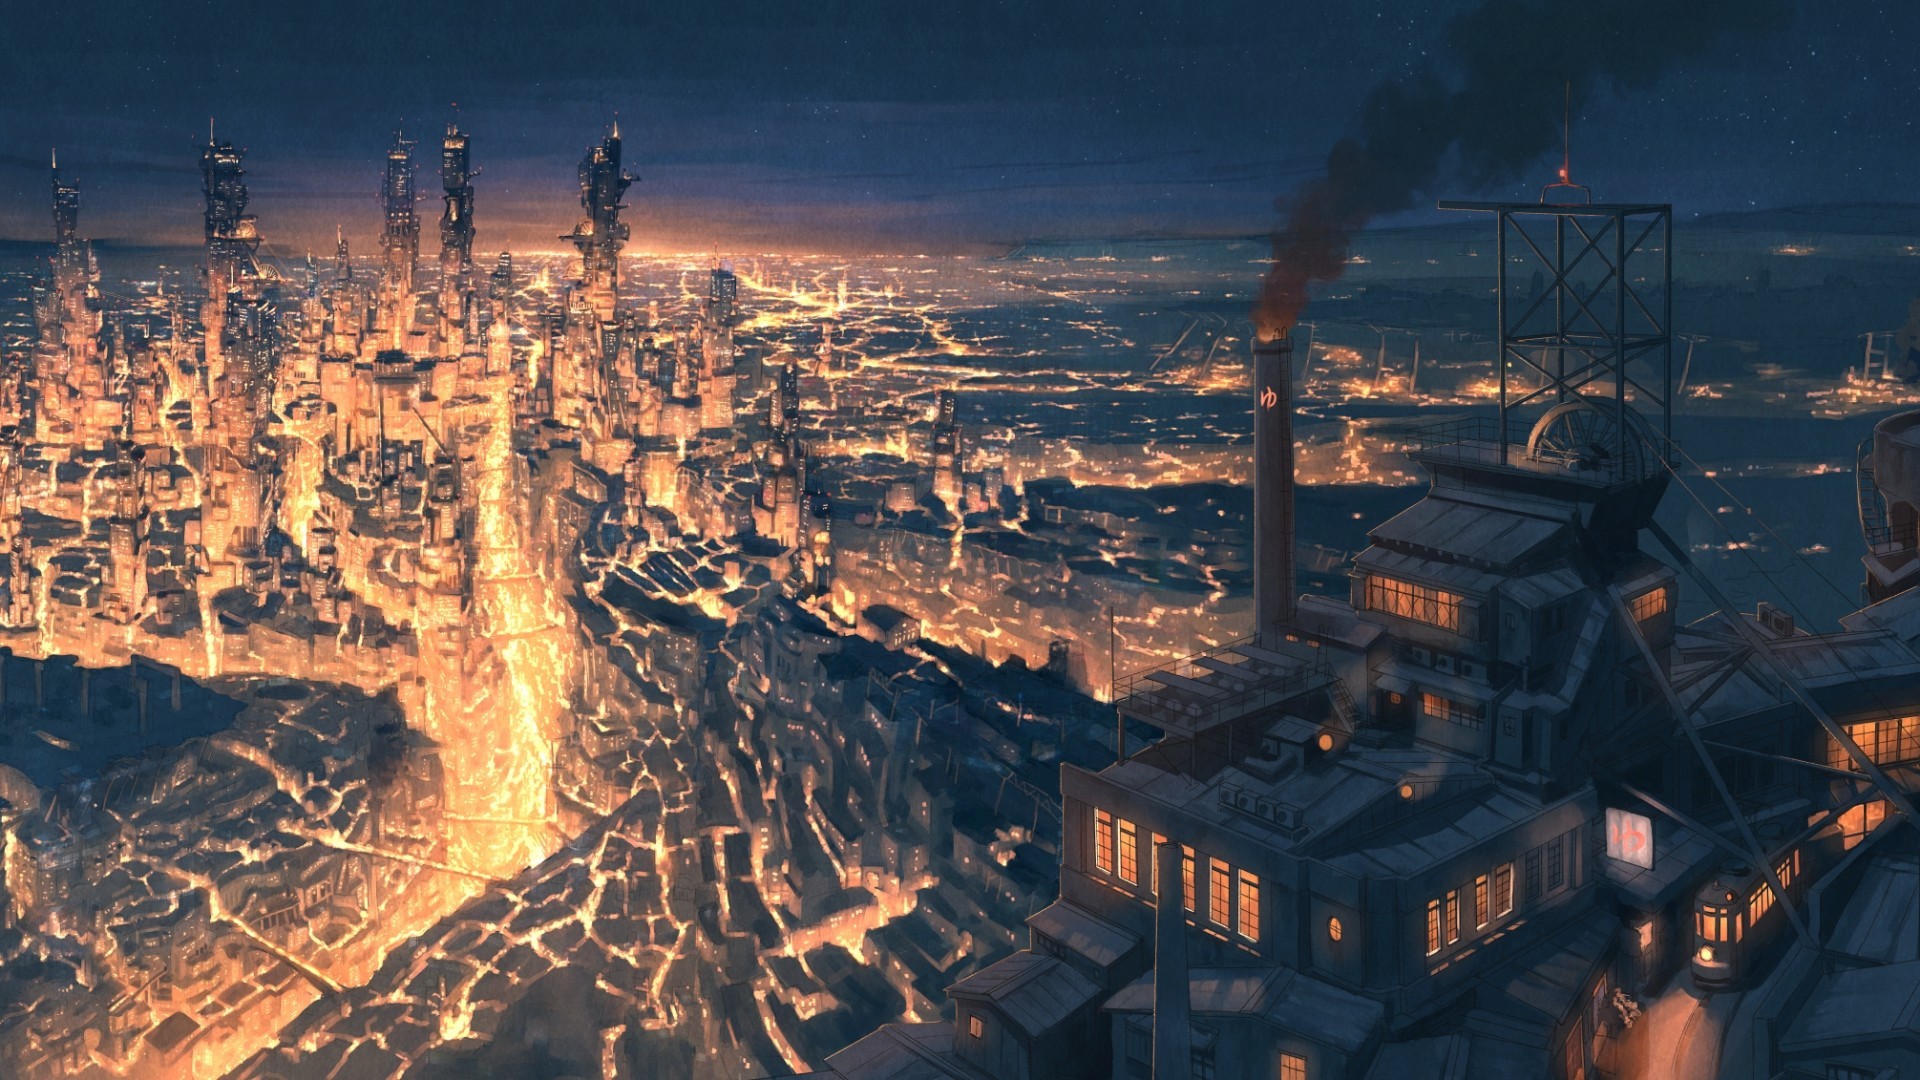 Anime Cityscape, Fantasy World, Scenic, Steampunk, - Steampunk Cityscape - HD Wallpaper 